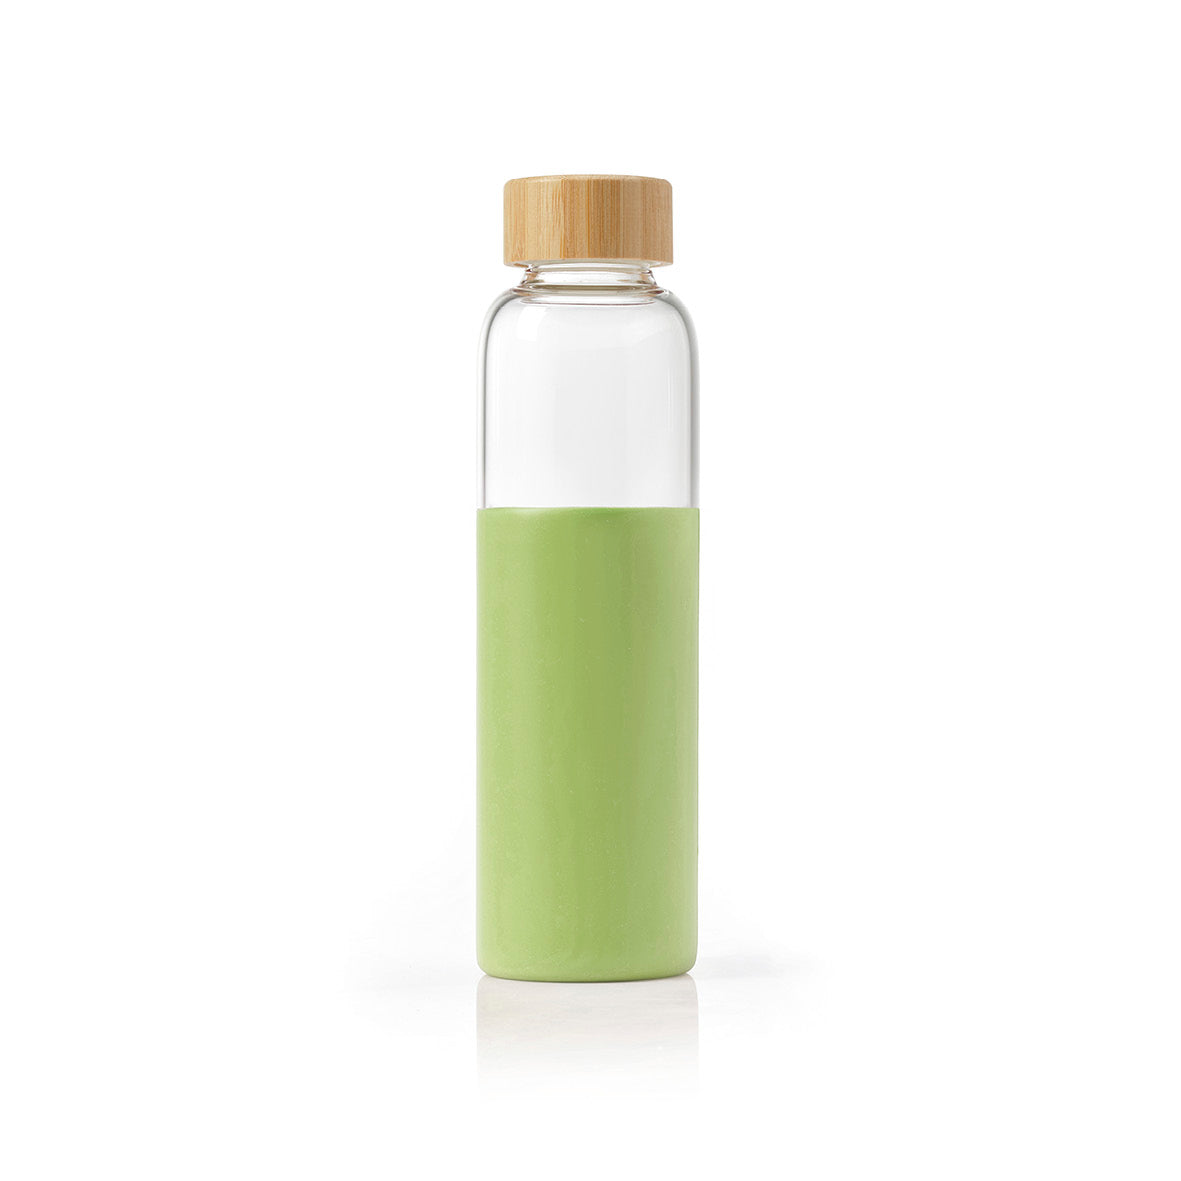 Acheter Artistique en plastique créatif Transparent A5/A6 plat bouteille de  boisson bouteille d'eau boissons bouilloire Drinkware